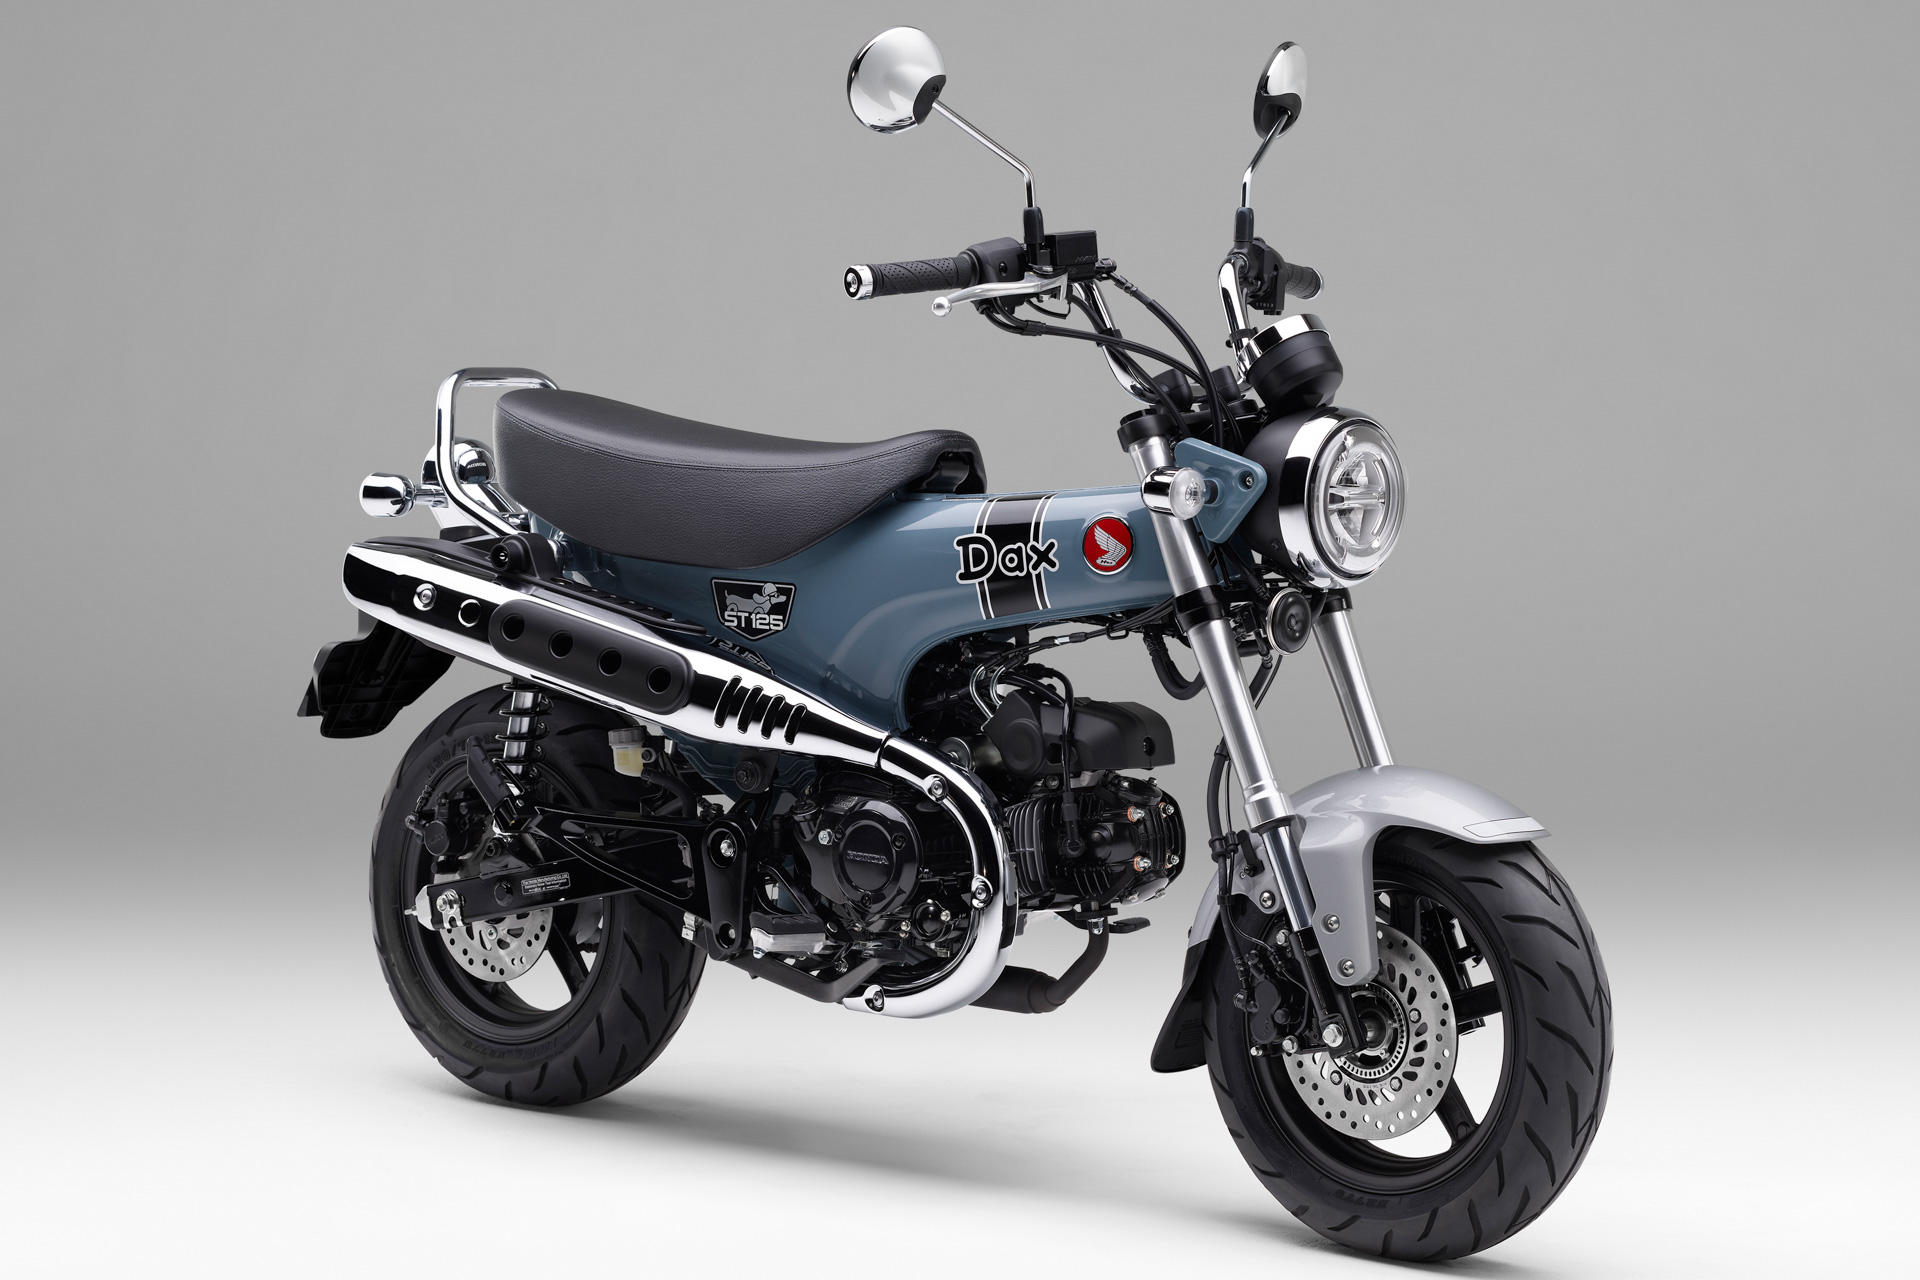 ホンダ、新型レジャーバイク「ダックス125」7月21日発売 価格は44万円